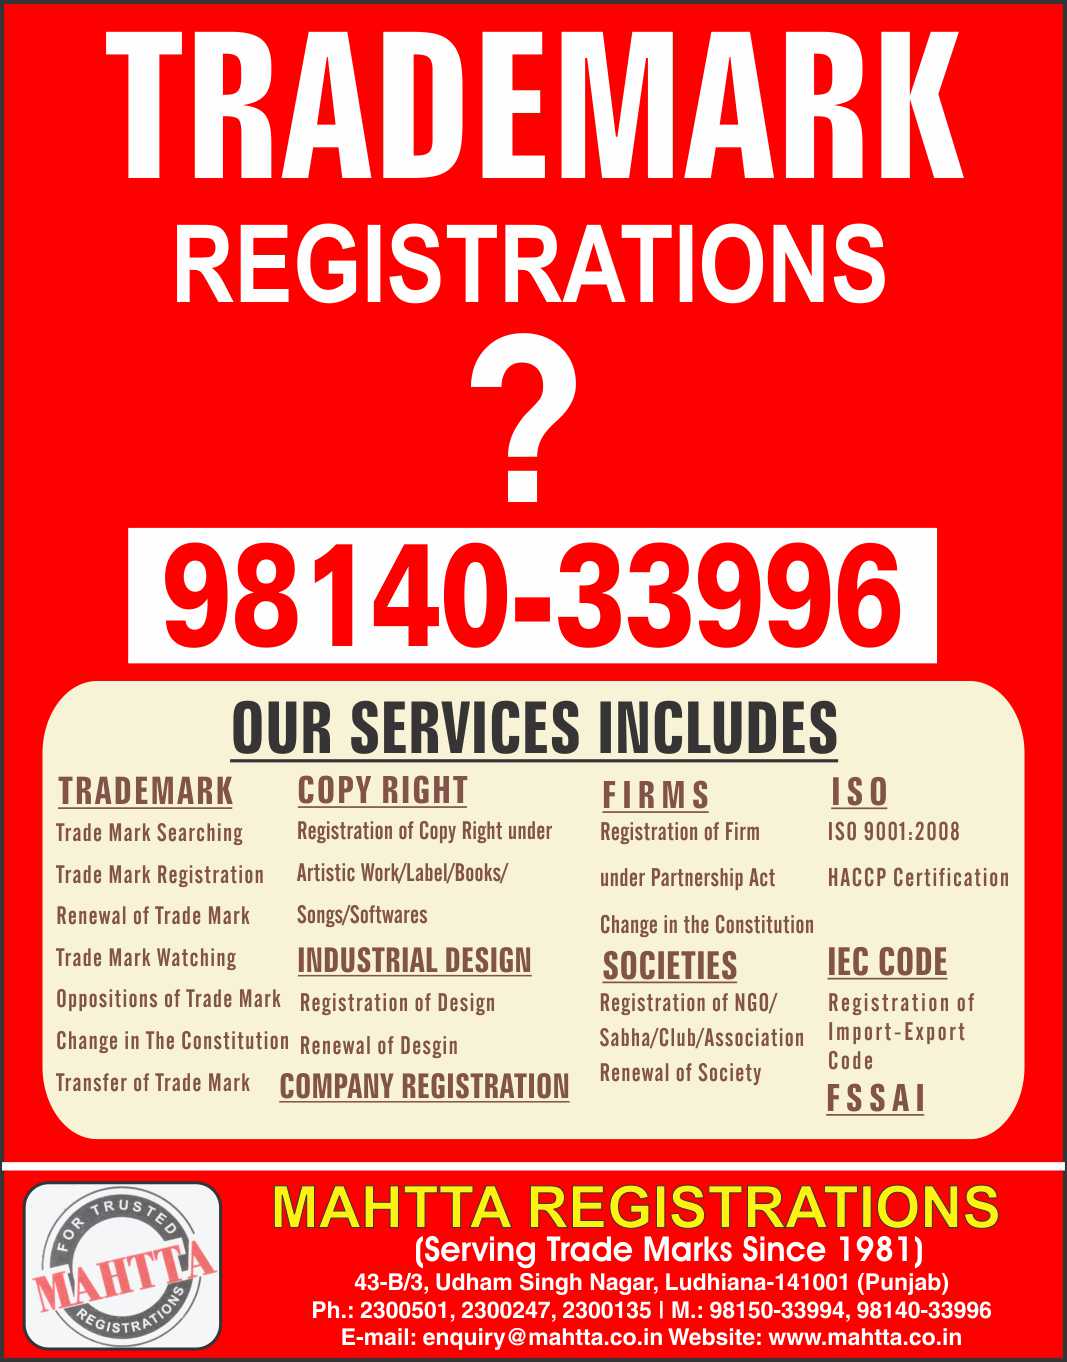 Mahtta Registrations